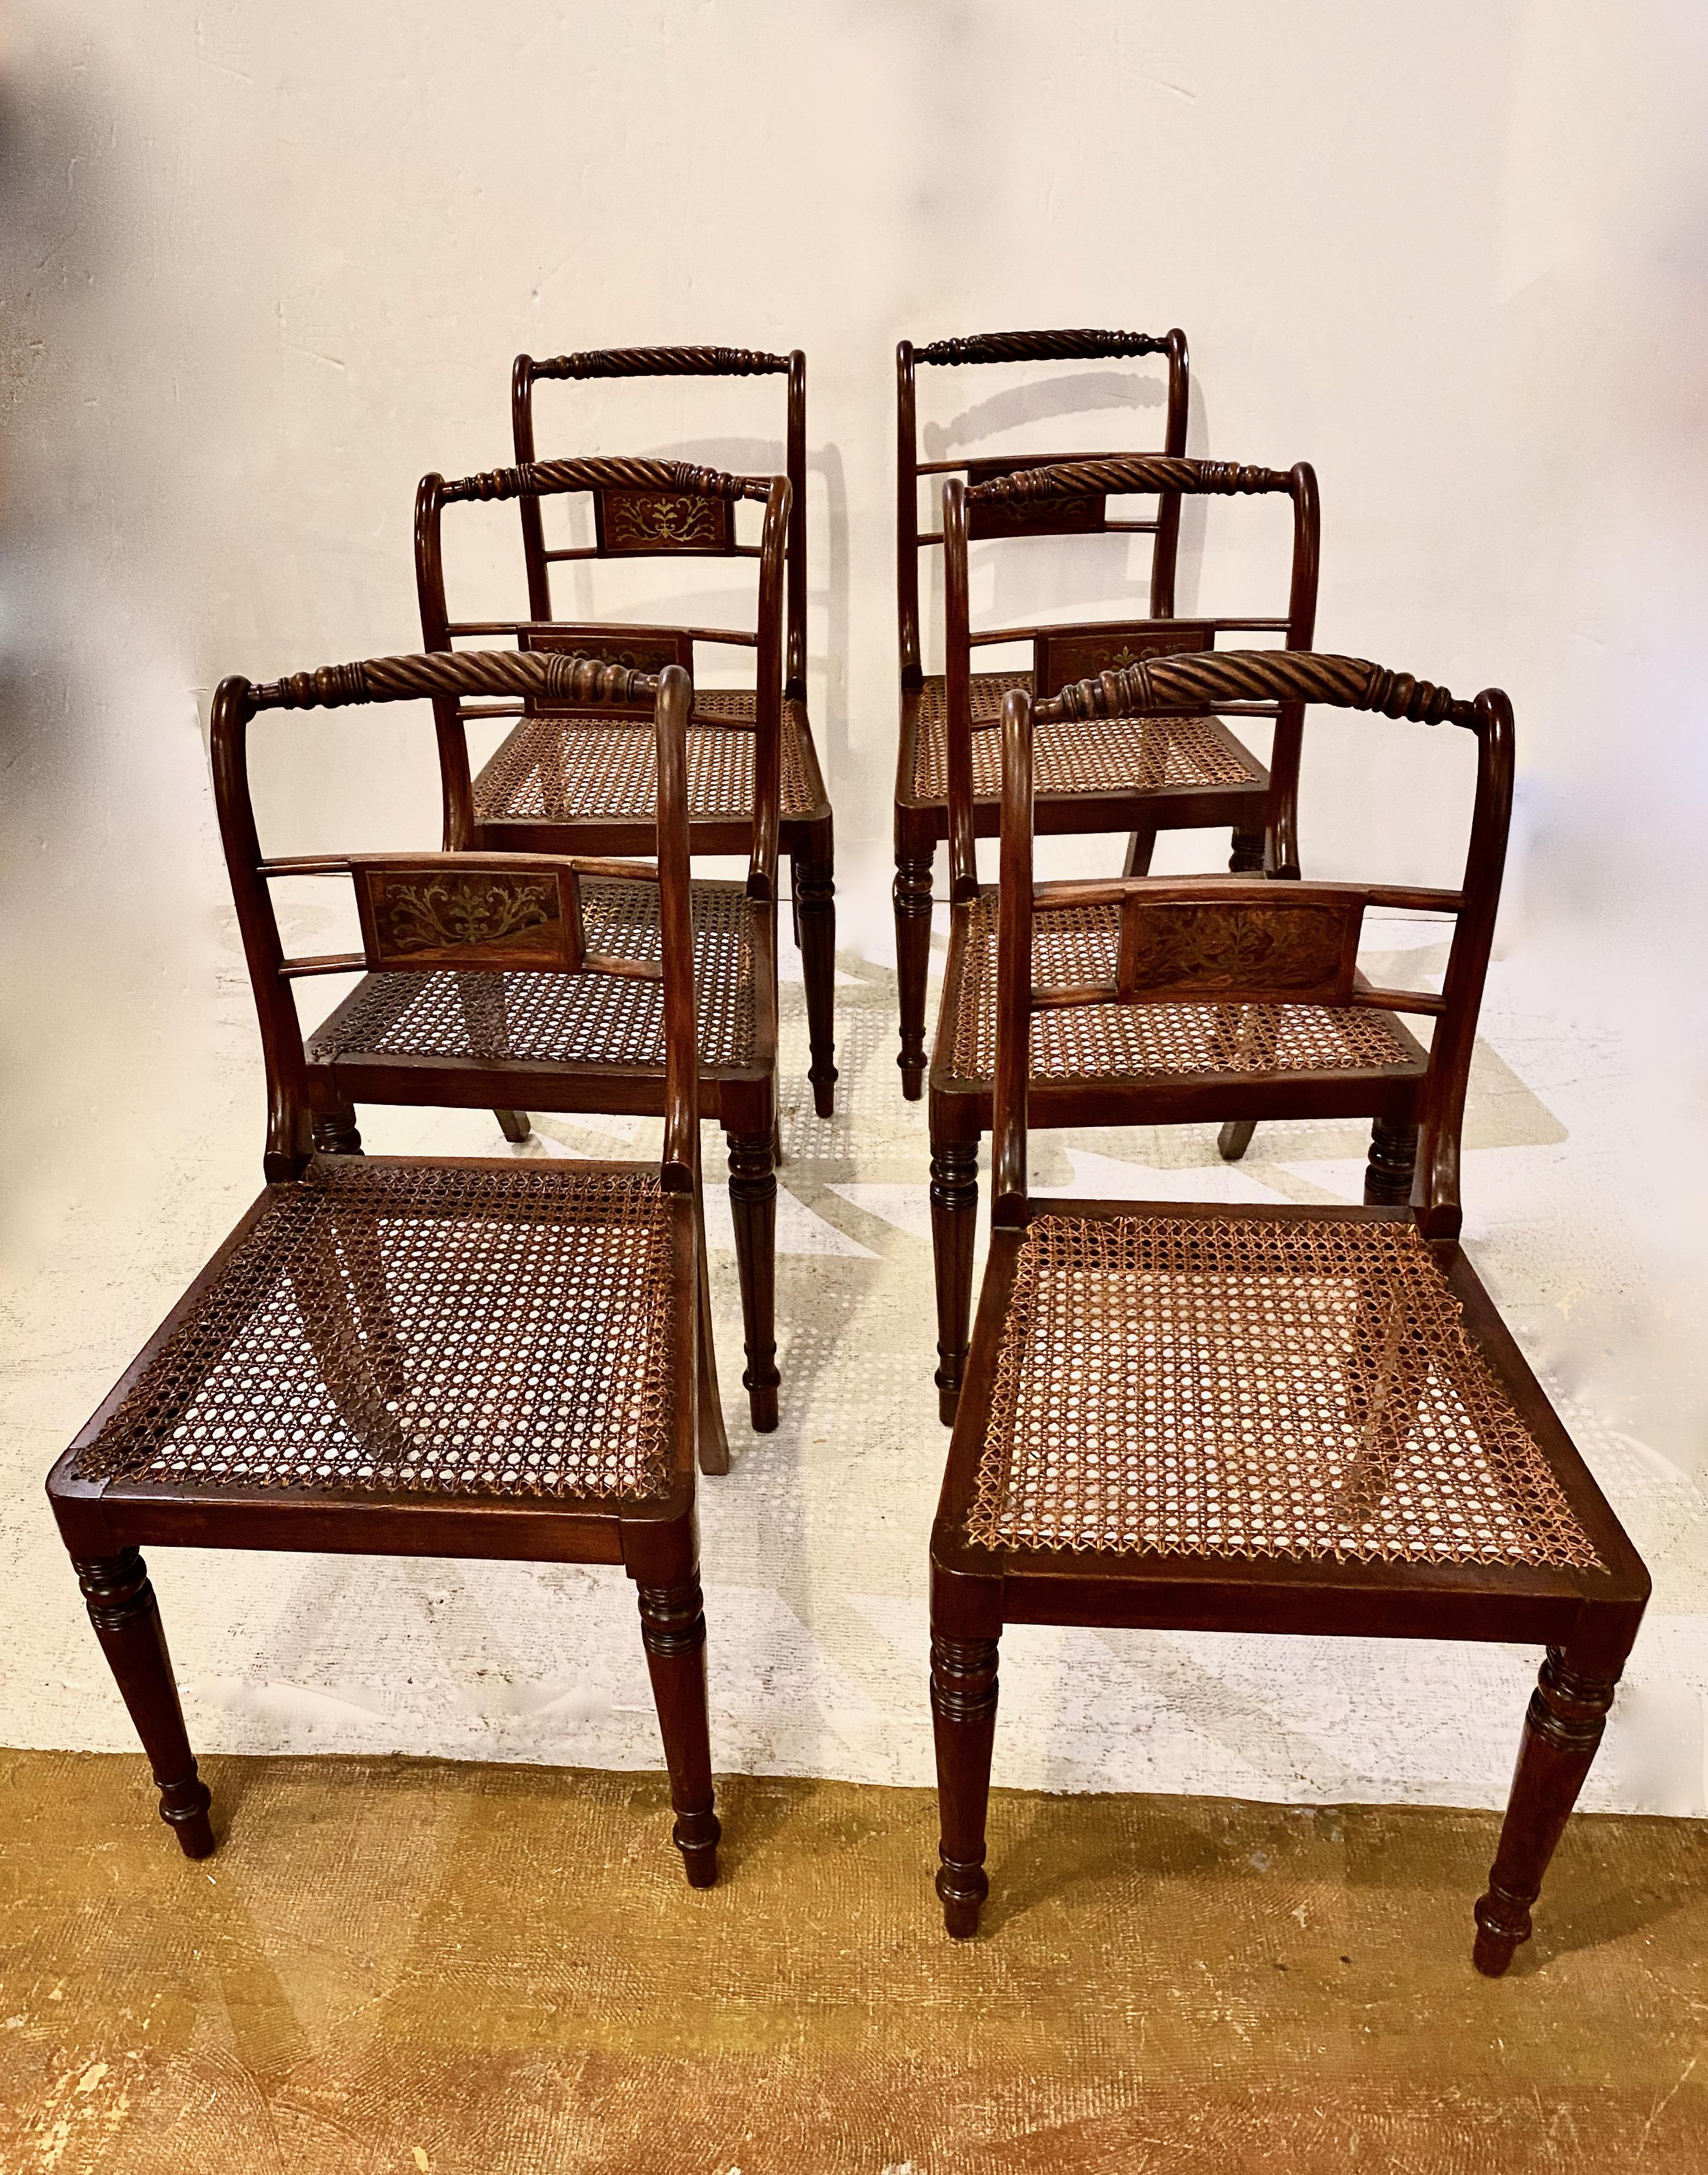 Il s'agit d'un très bel ensemble de 6 chaises d'appoint ou de salle à manger en acajou massif de style Régence anglaise, de forme klismos modifiée. Les chaises sont dotées d'une barre supérieure en corde bien sculptée qui, avec l'éclisse centrale